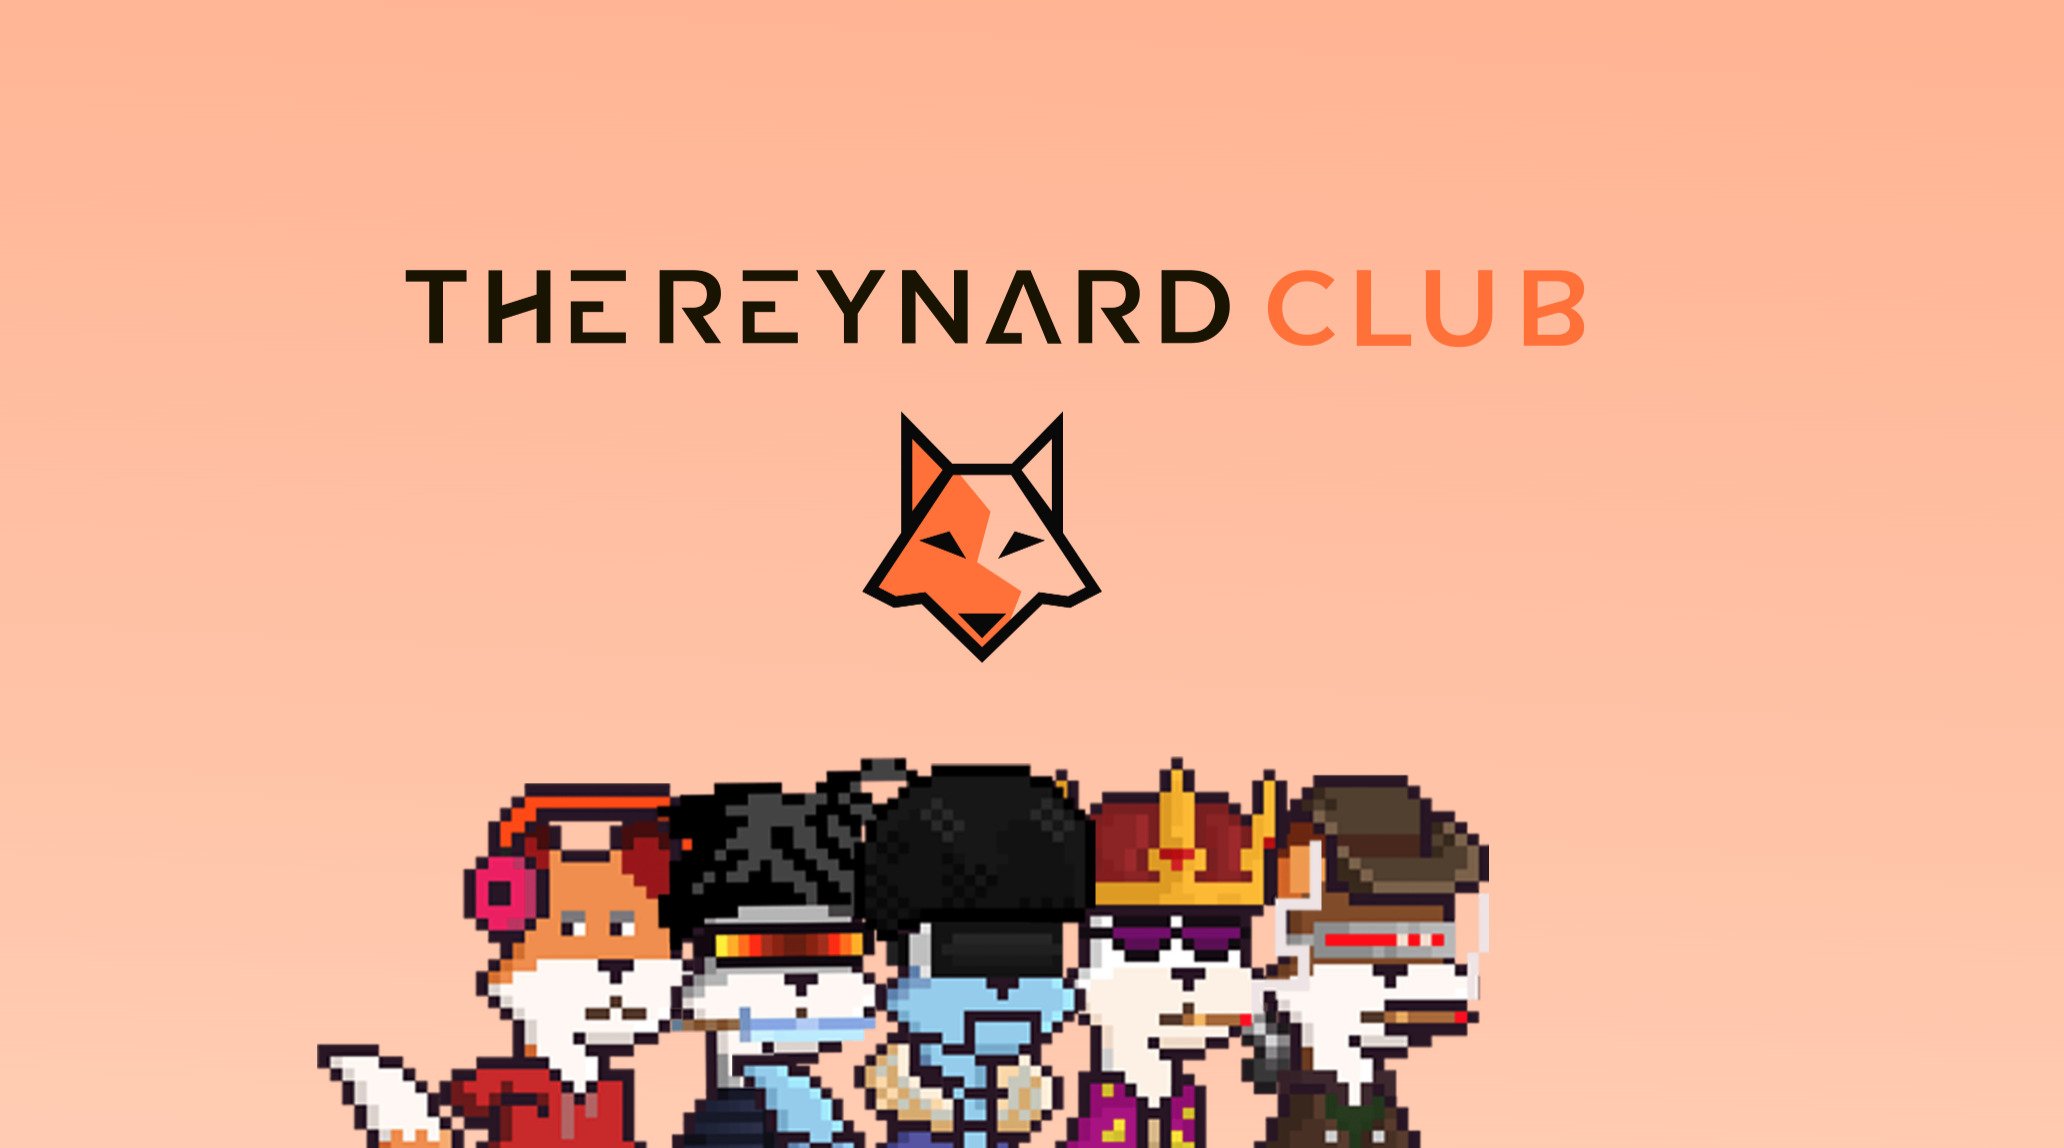 The Reynard Club